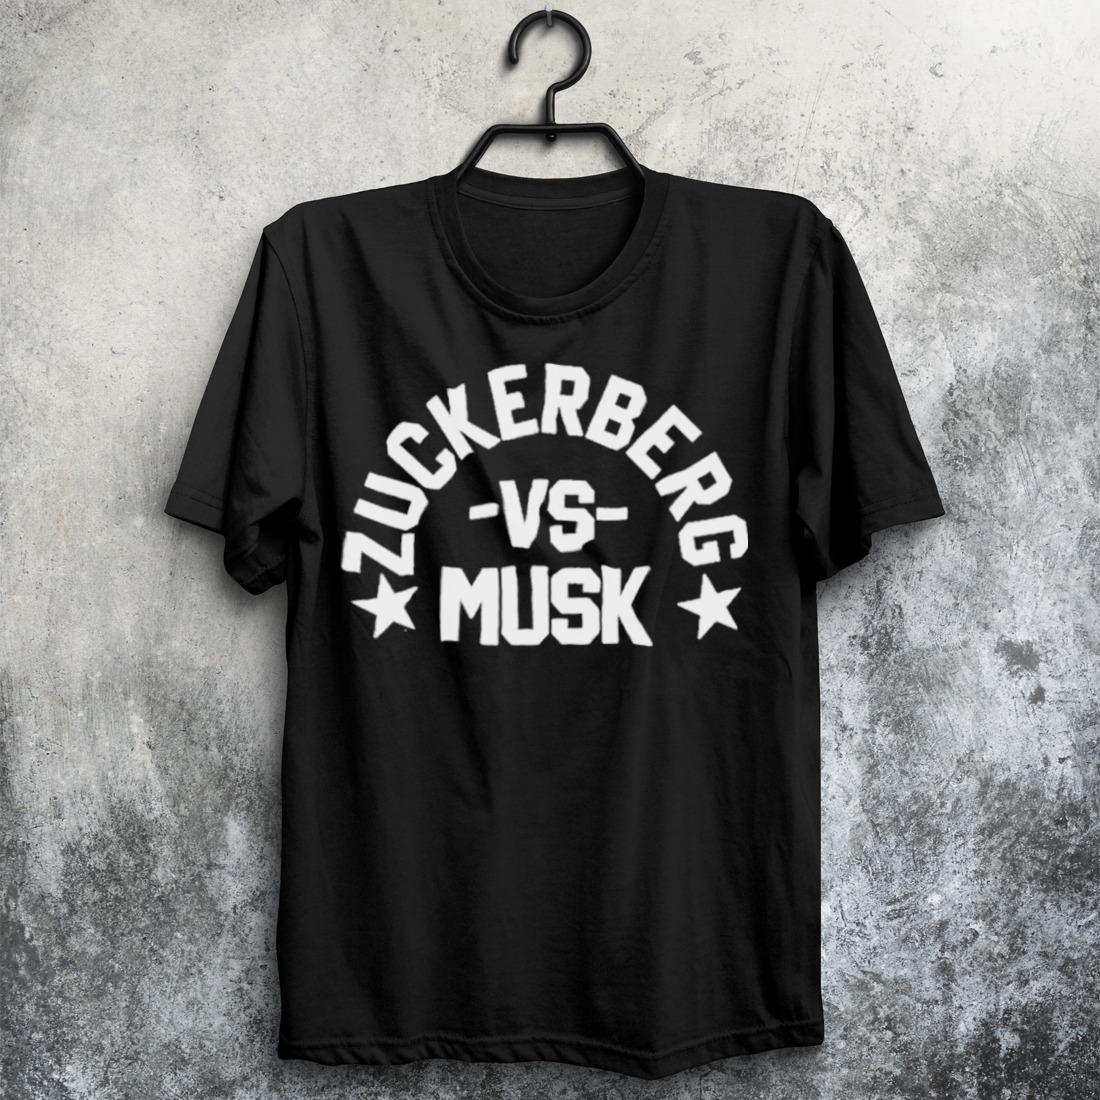 Zuckerberg Vs Musk Ufc Shirt